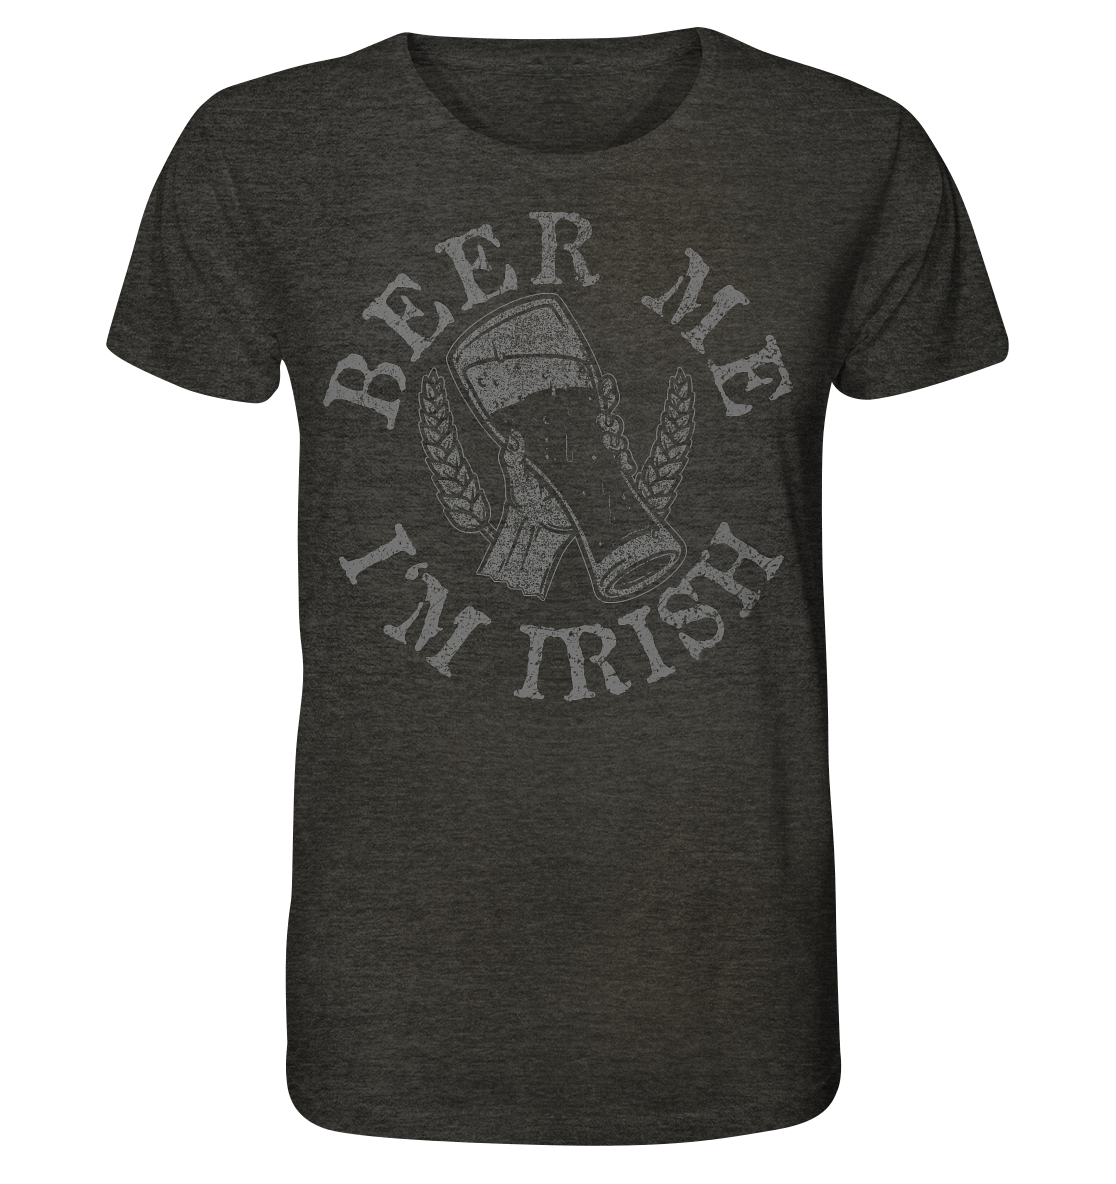 Beer Me "I'm Irish" - Organic Shirt (meliert)